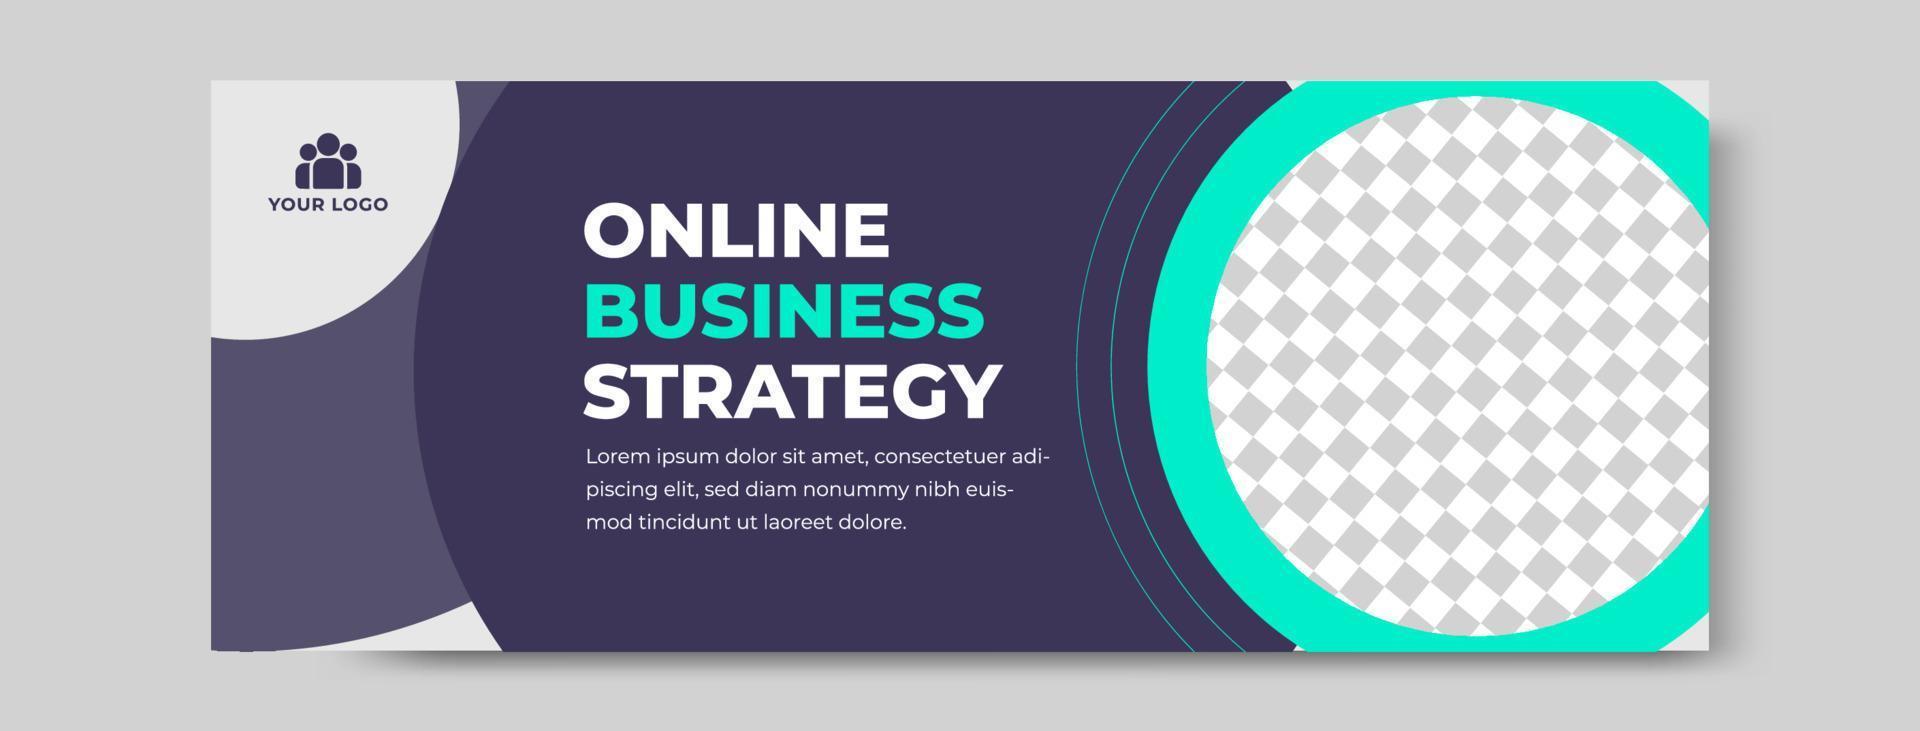 banner voor online bedrijfsstrategie vector